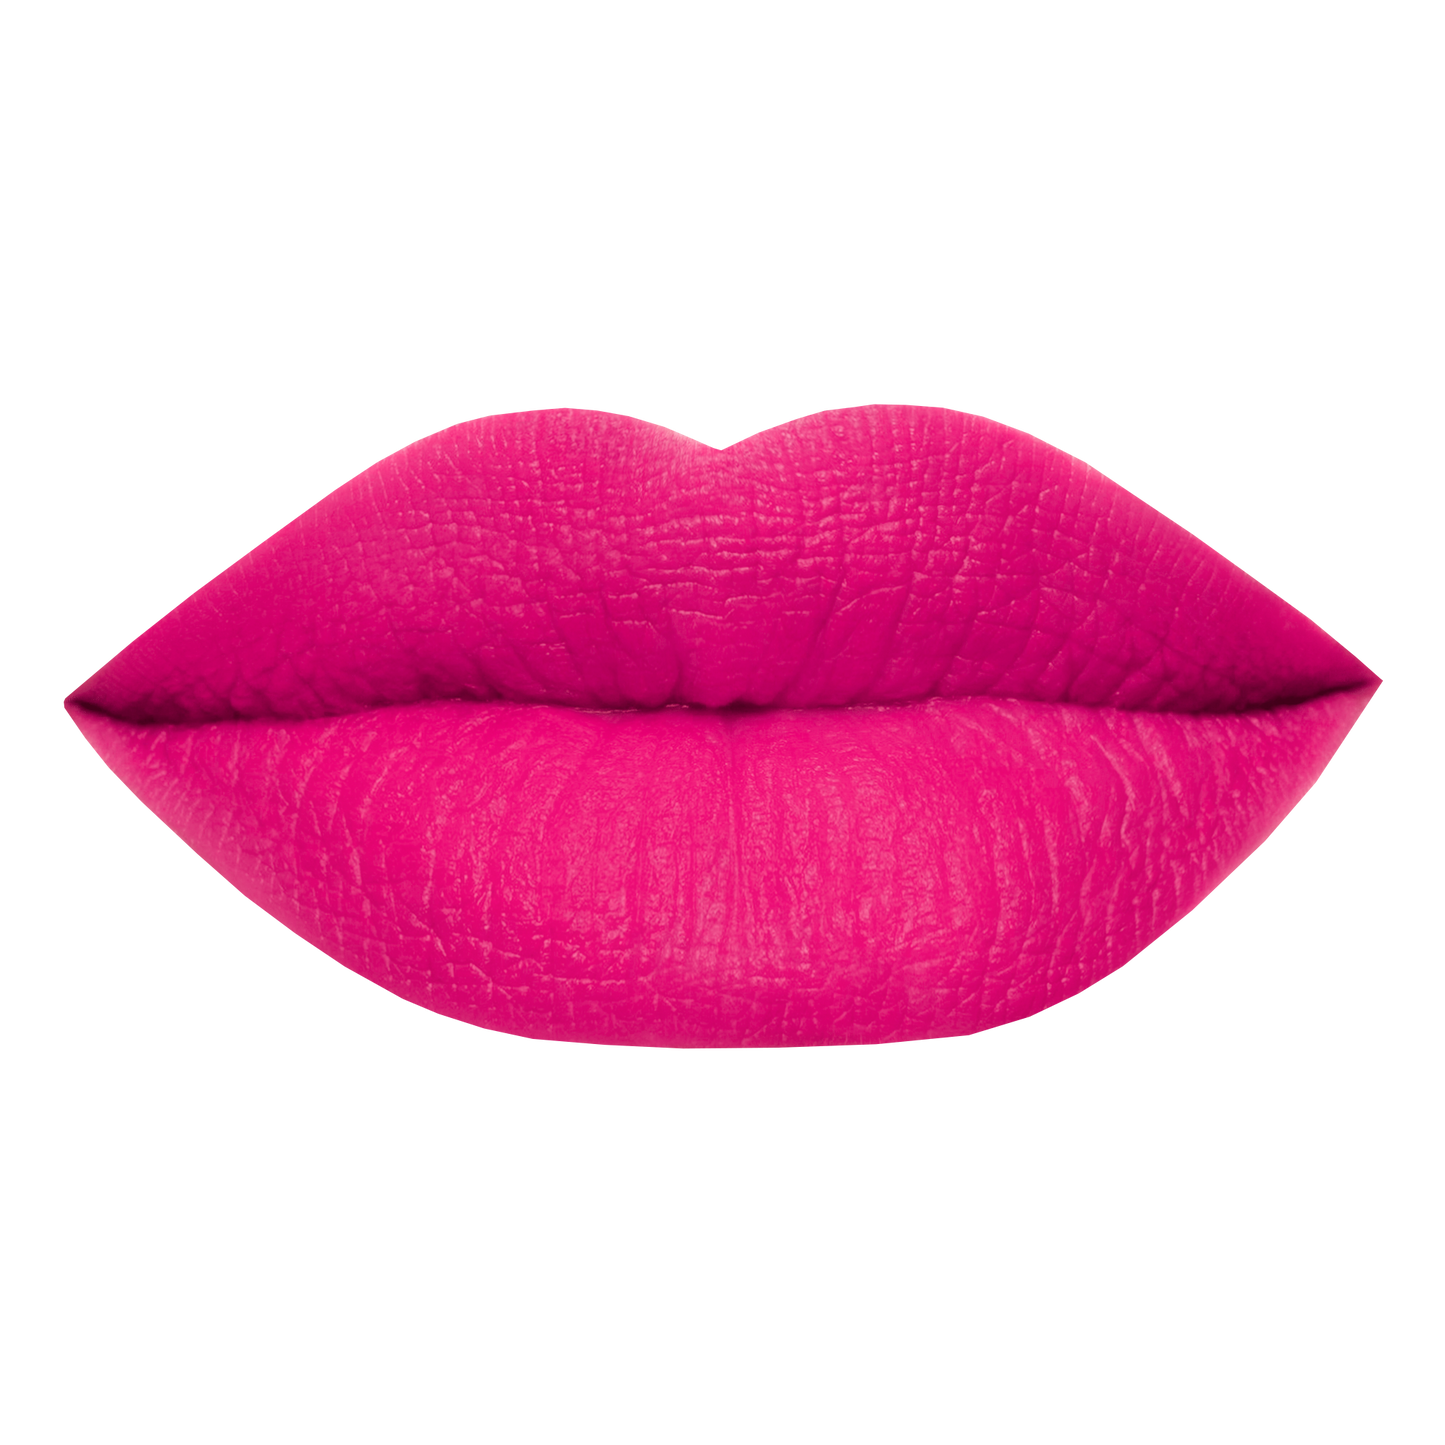 FULL SET - Comfy Matte Liquid Lipsticks